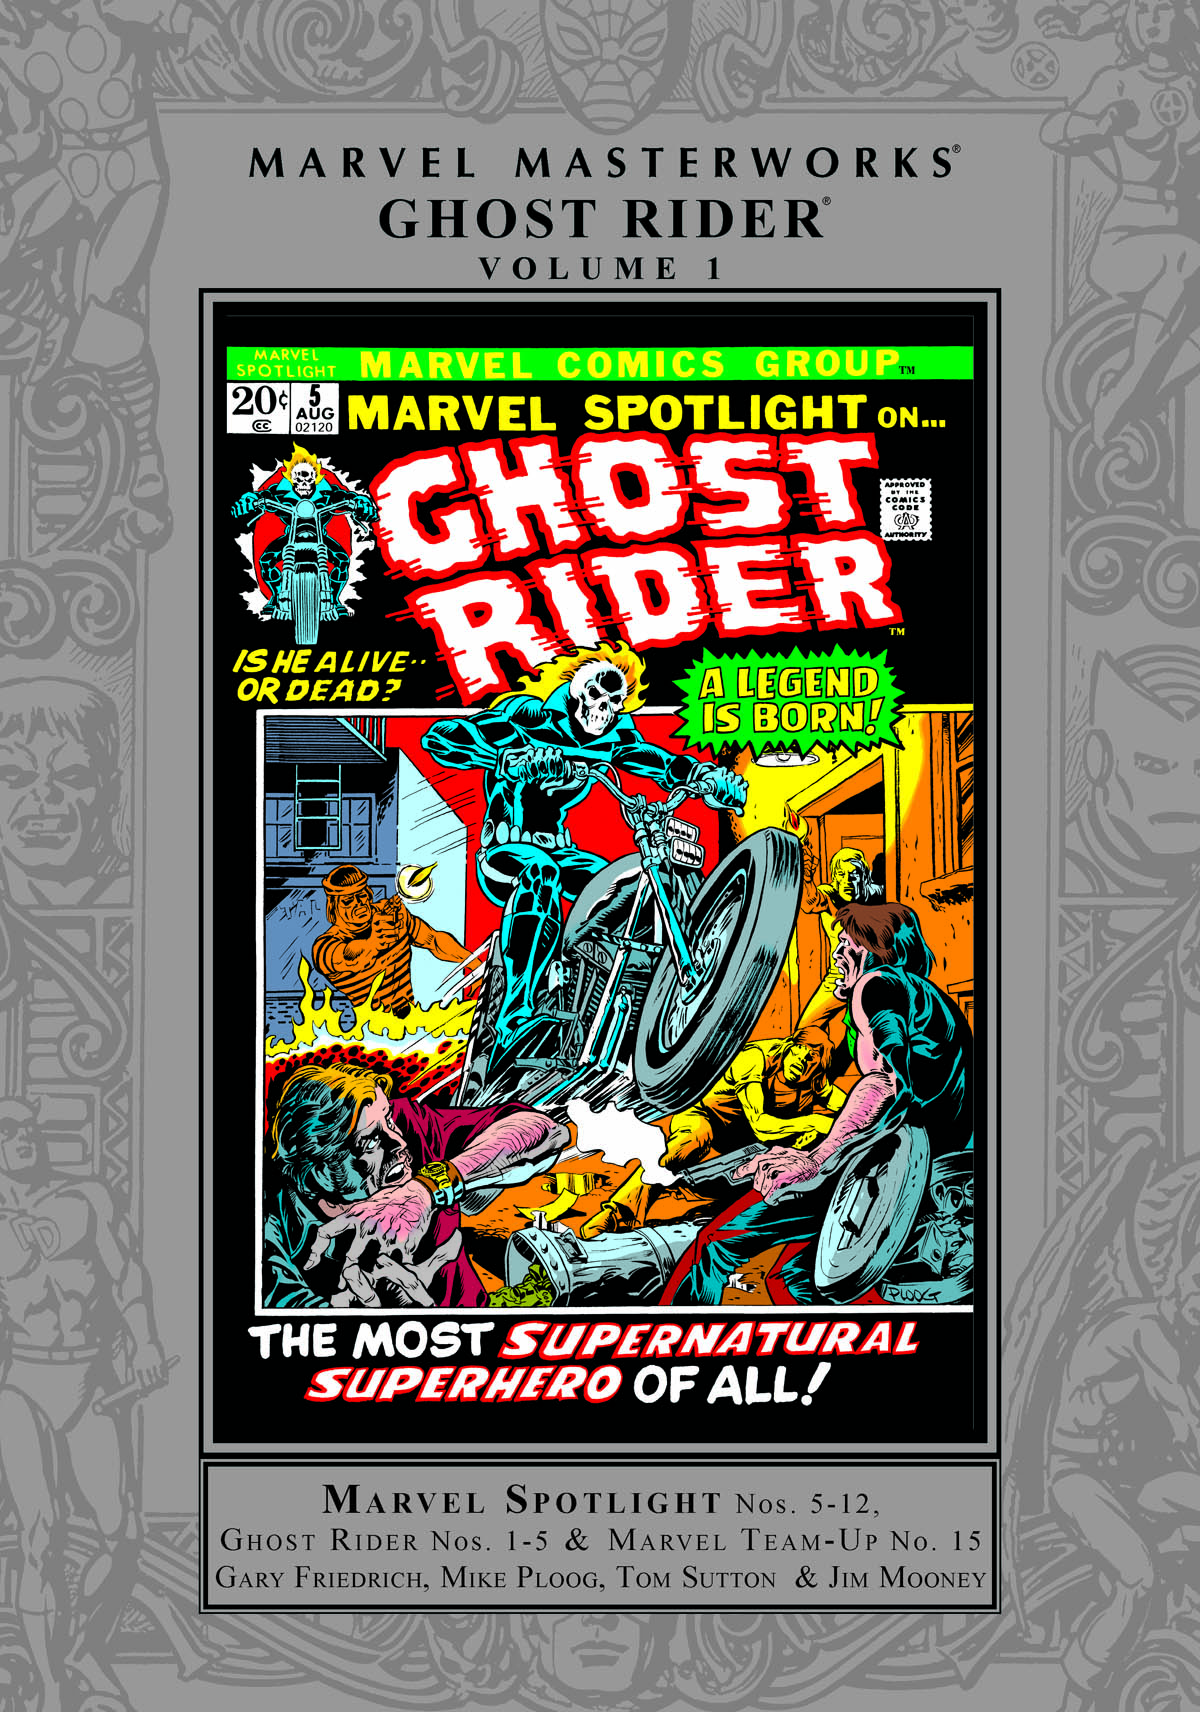 Marvel Masterworks: Ghost Rider Vol. 1 (Trade Paperback)